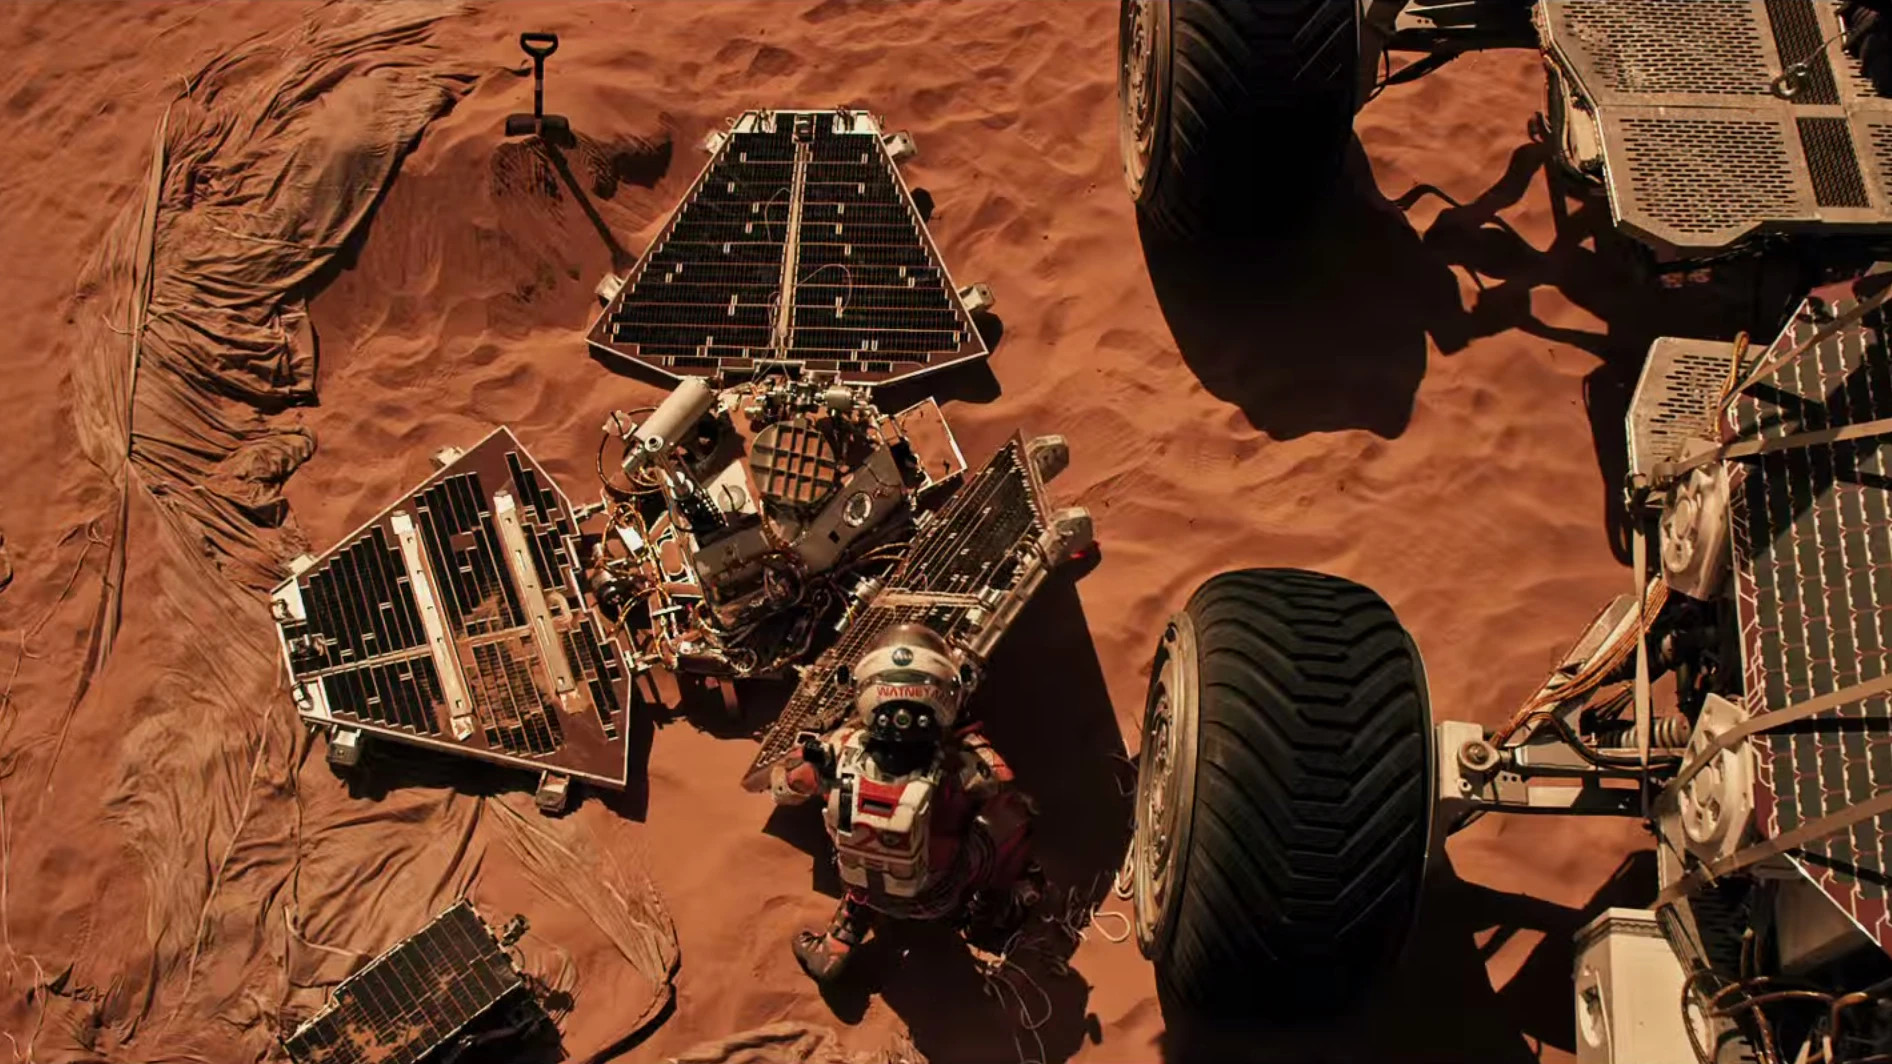 Tàu vũ trụ robot Mars Pathfinder của NASA chạm tới bề mặt Sao Hỏa vào ngày 4/7/1997. Khi hạ cánh xuống bề mặt Hành tinh Đỏ, nó đã triển khai một số túi khí để giữ thăng bằng trong quá trình hạ cánh. Khi đến đích, tàu khám phá khu vực Ares Vallis của Hành tinh Đỏ, bắt đầu phân tích bầu khí quyển, khí hậu và địa chất của nó. Tàu cũng thu thập được bằng chứng cho thấy Hỏa tinh từng có nước chảy trên bề mặt. (Ảnh: Google)